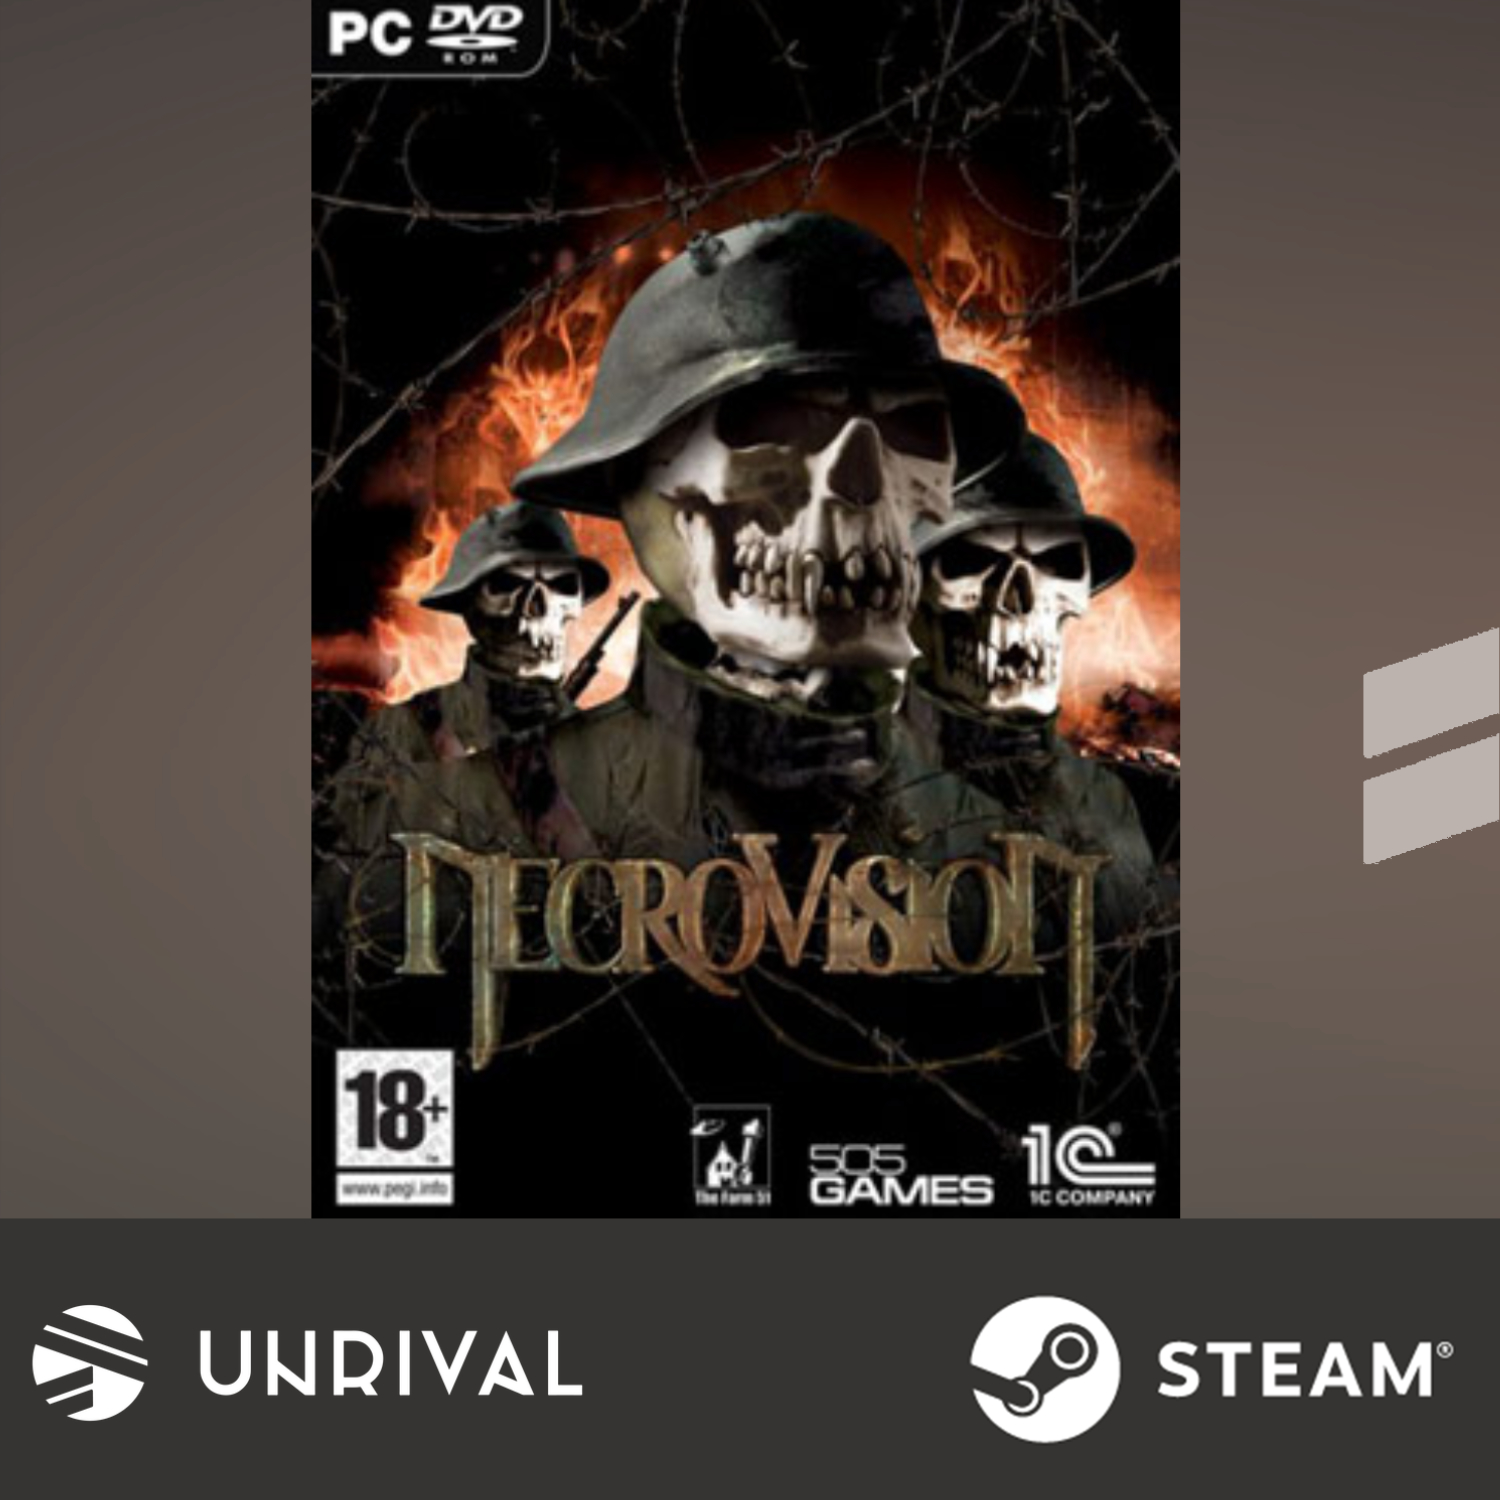 NecroVision PC Digital Download Game - Unrival